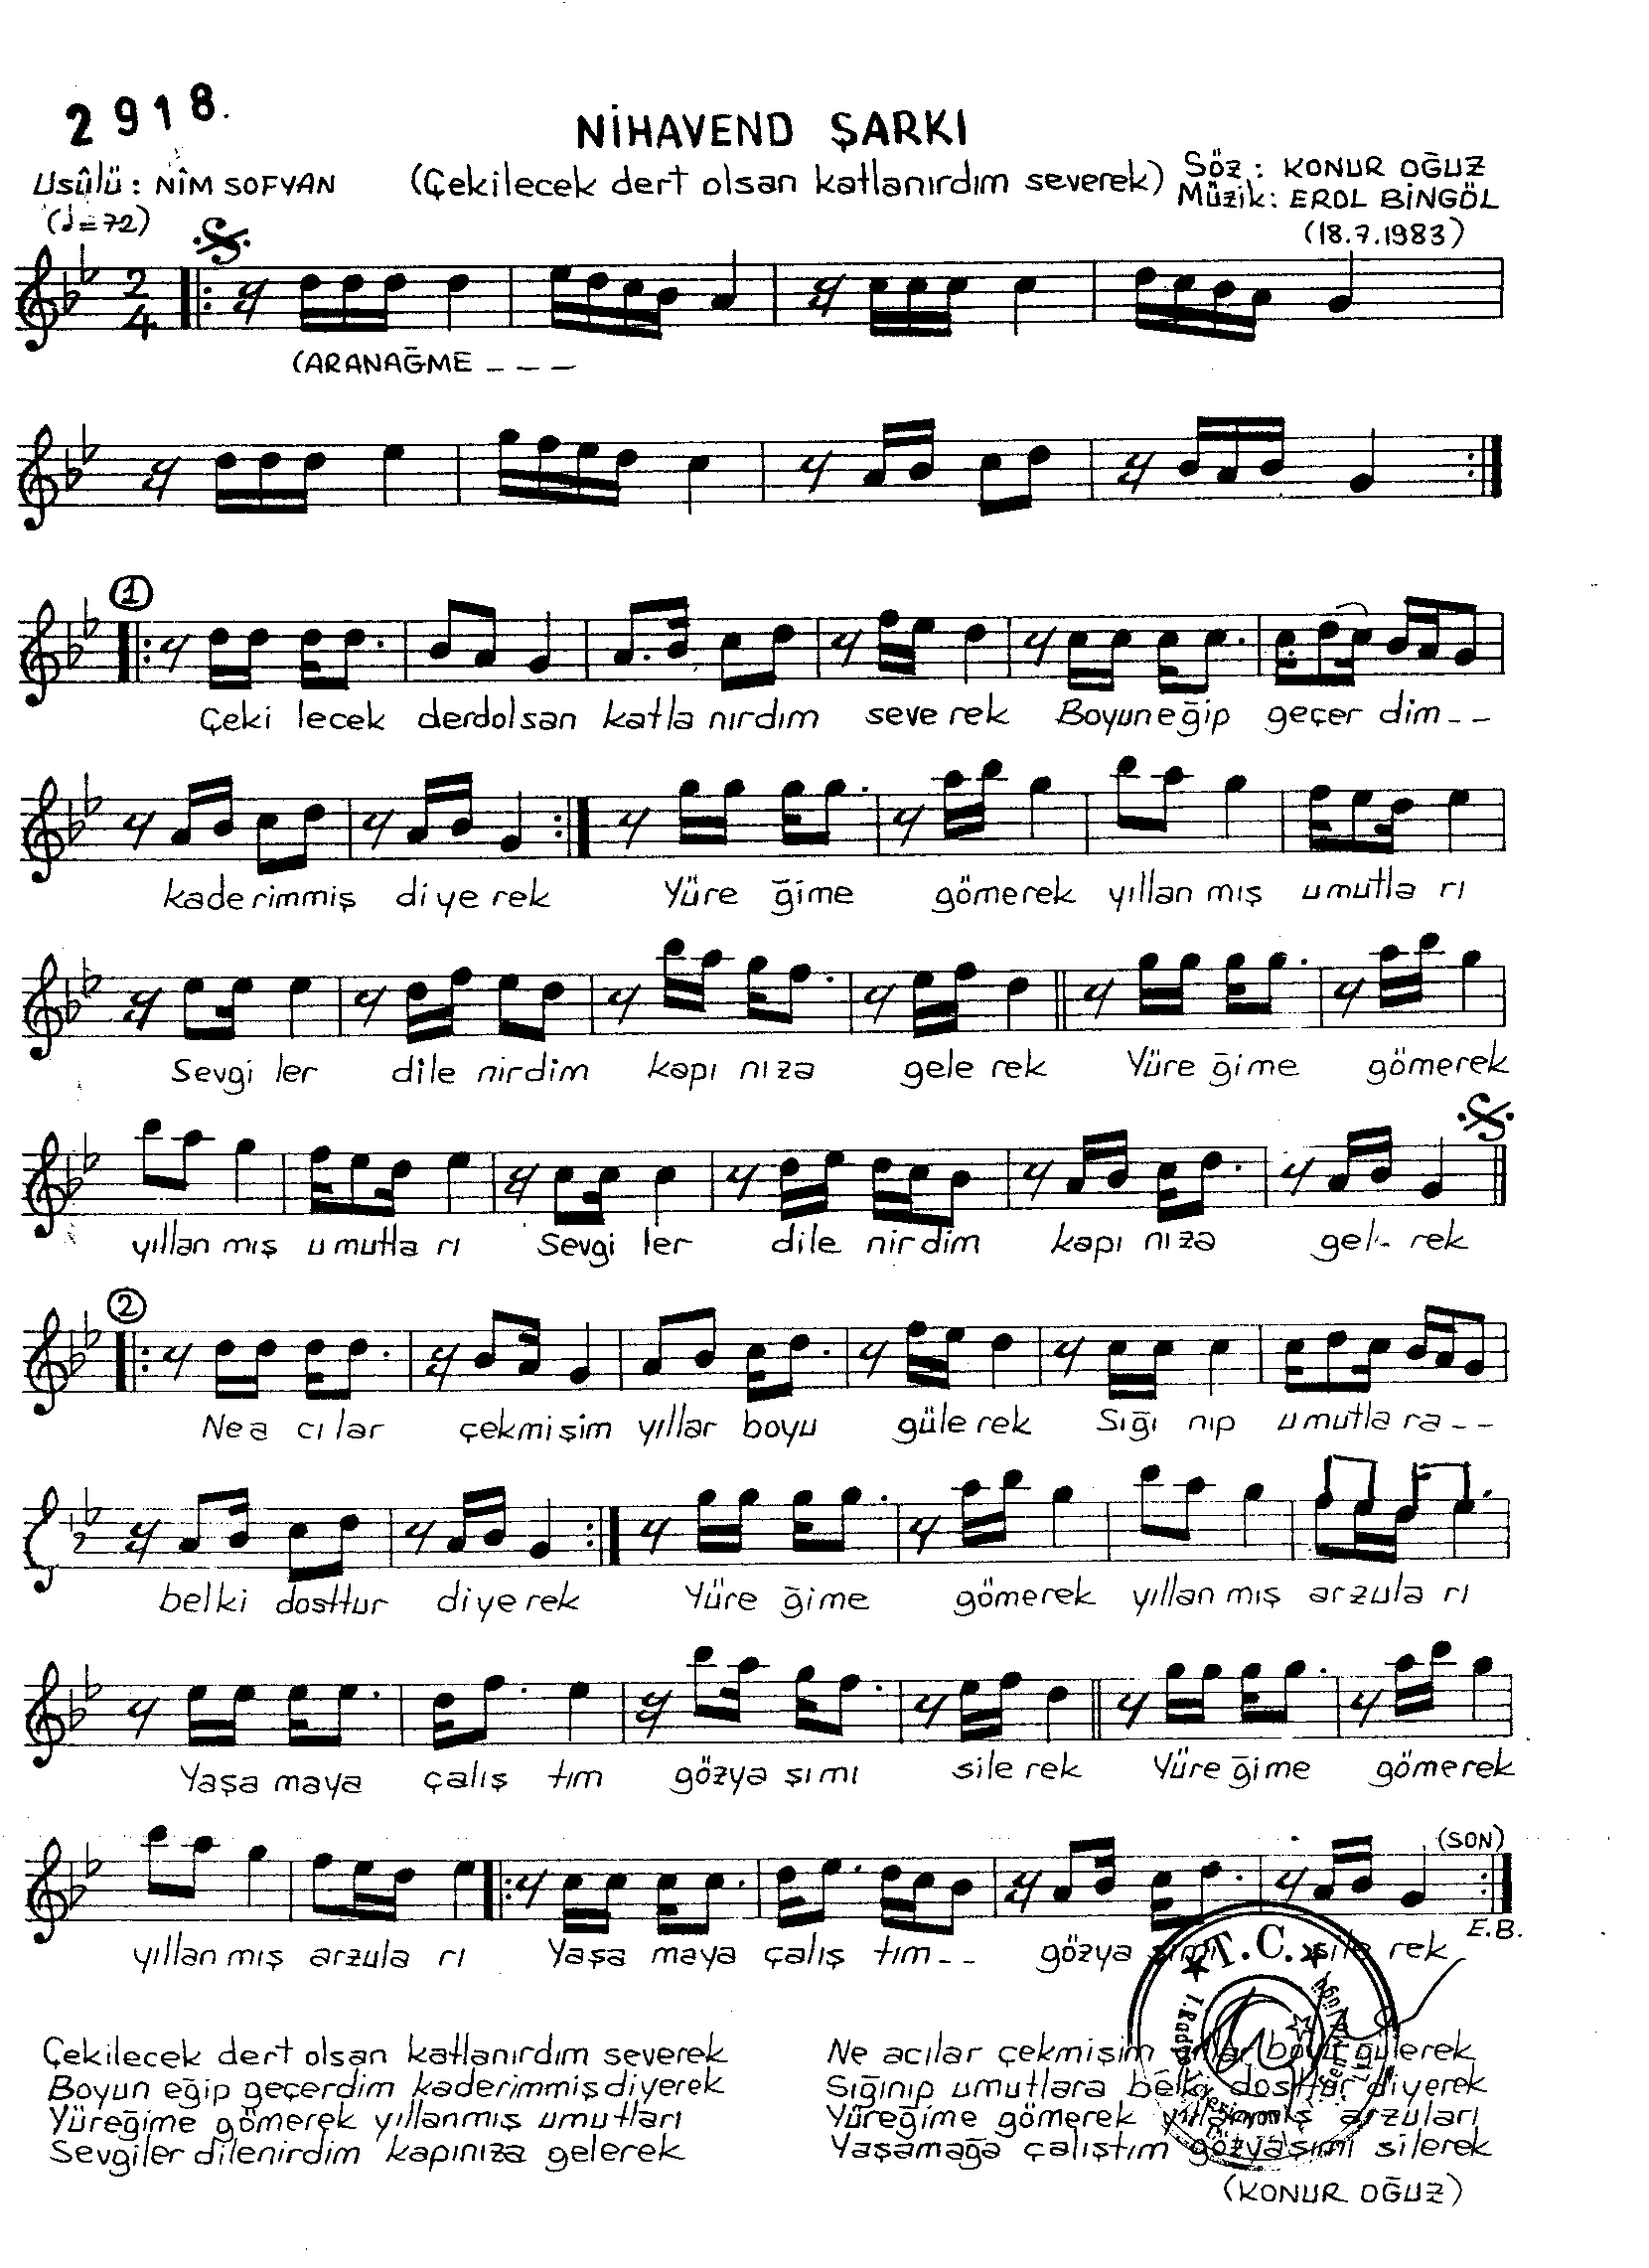 Nihâvend - Şarkı - Erol Bingöl - Sayfa 1